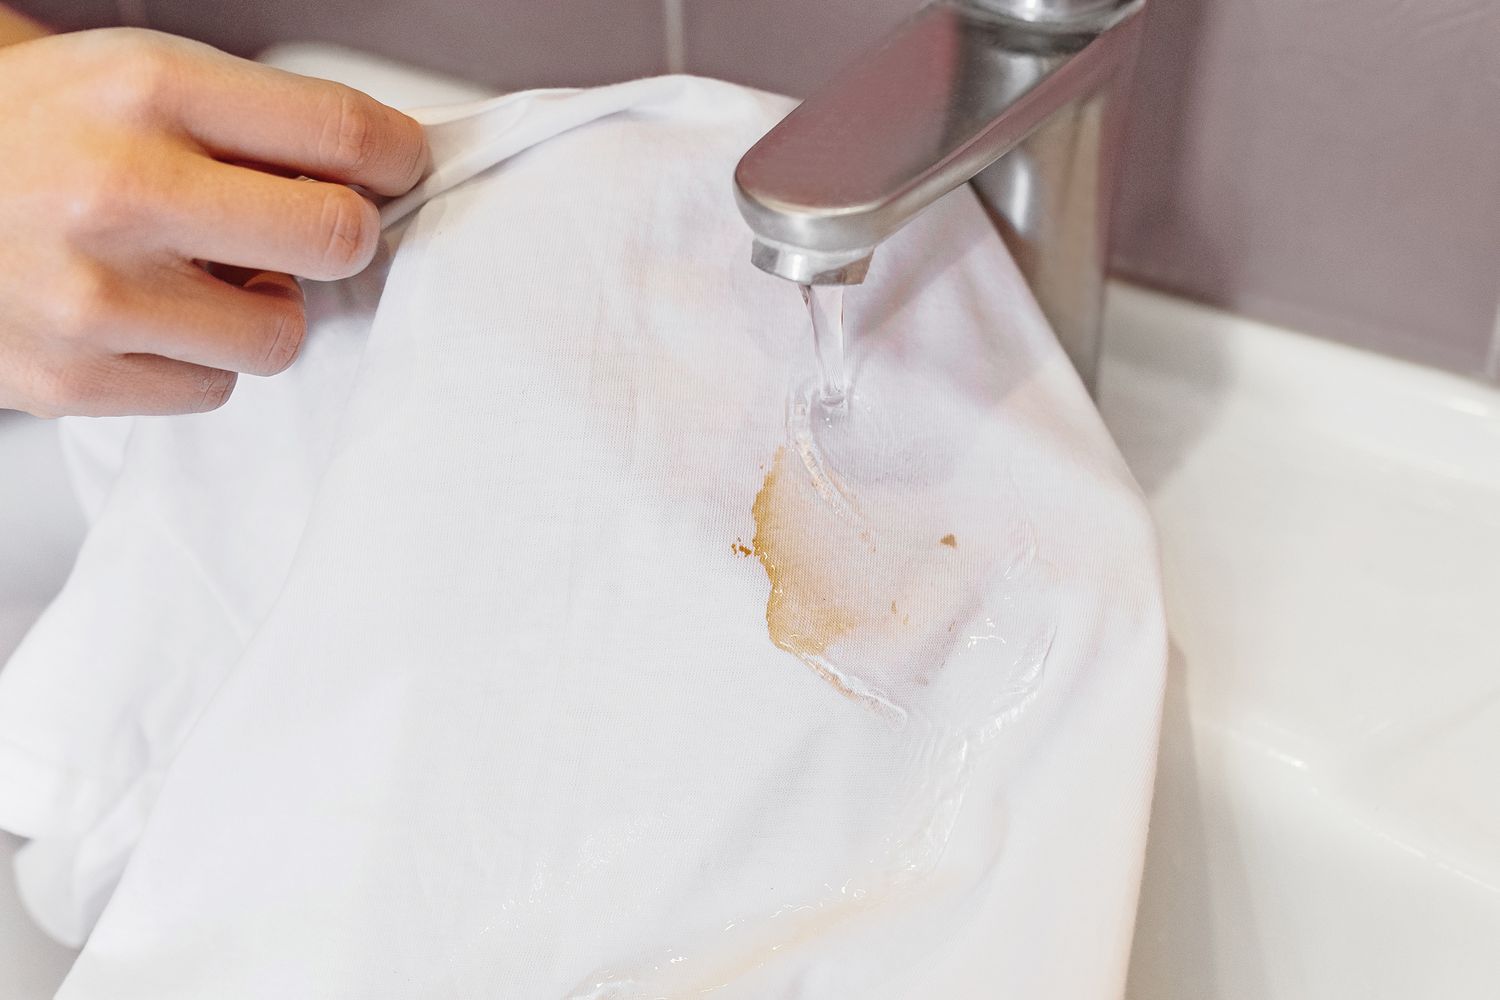 Camisa manchada de salsa de soja aclarada bajo el chorro de agua fría